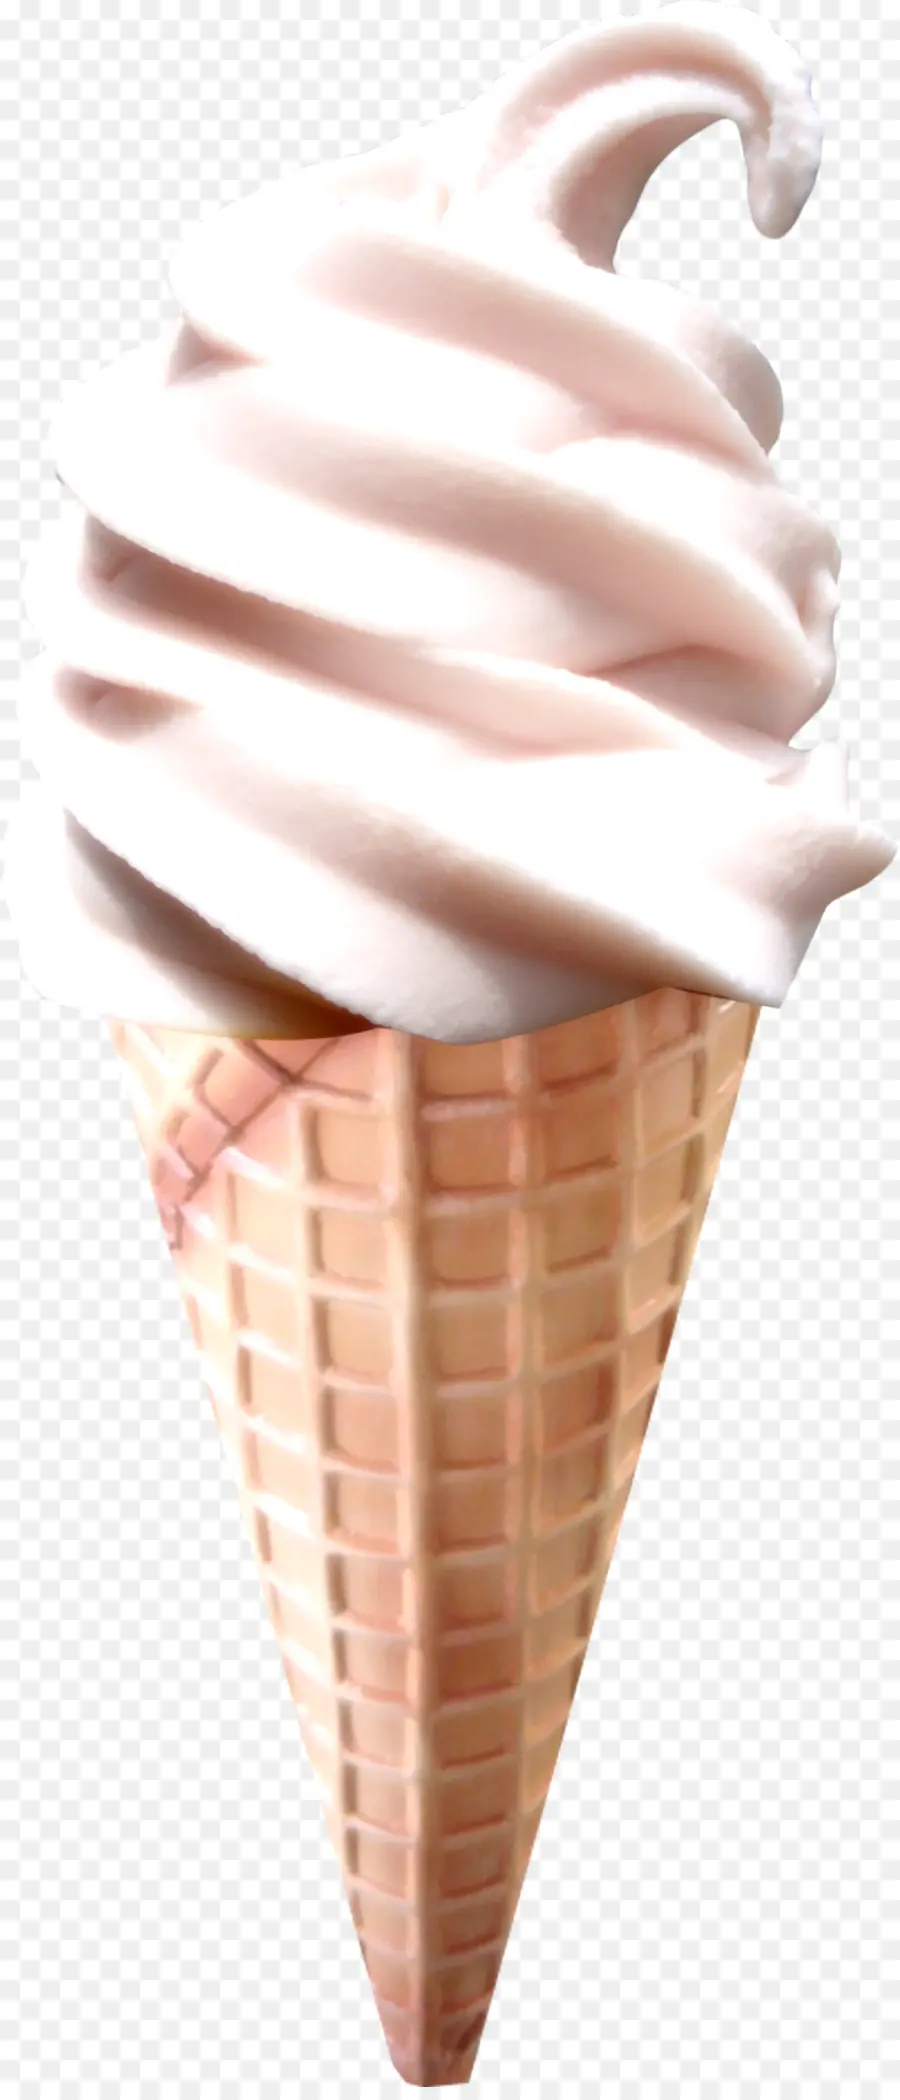 Crème Glacée，Cornets De Crème Glacée PNG